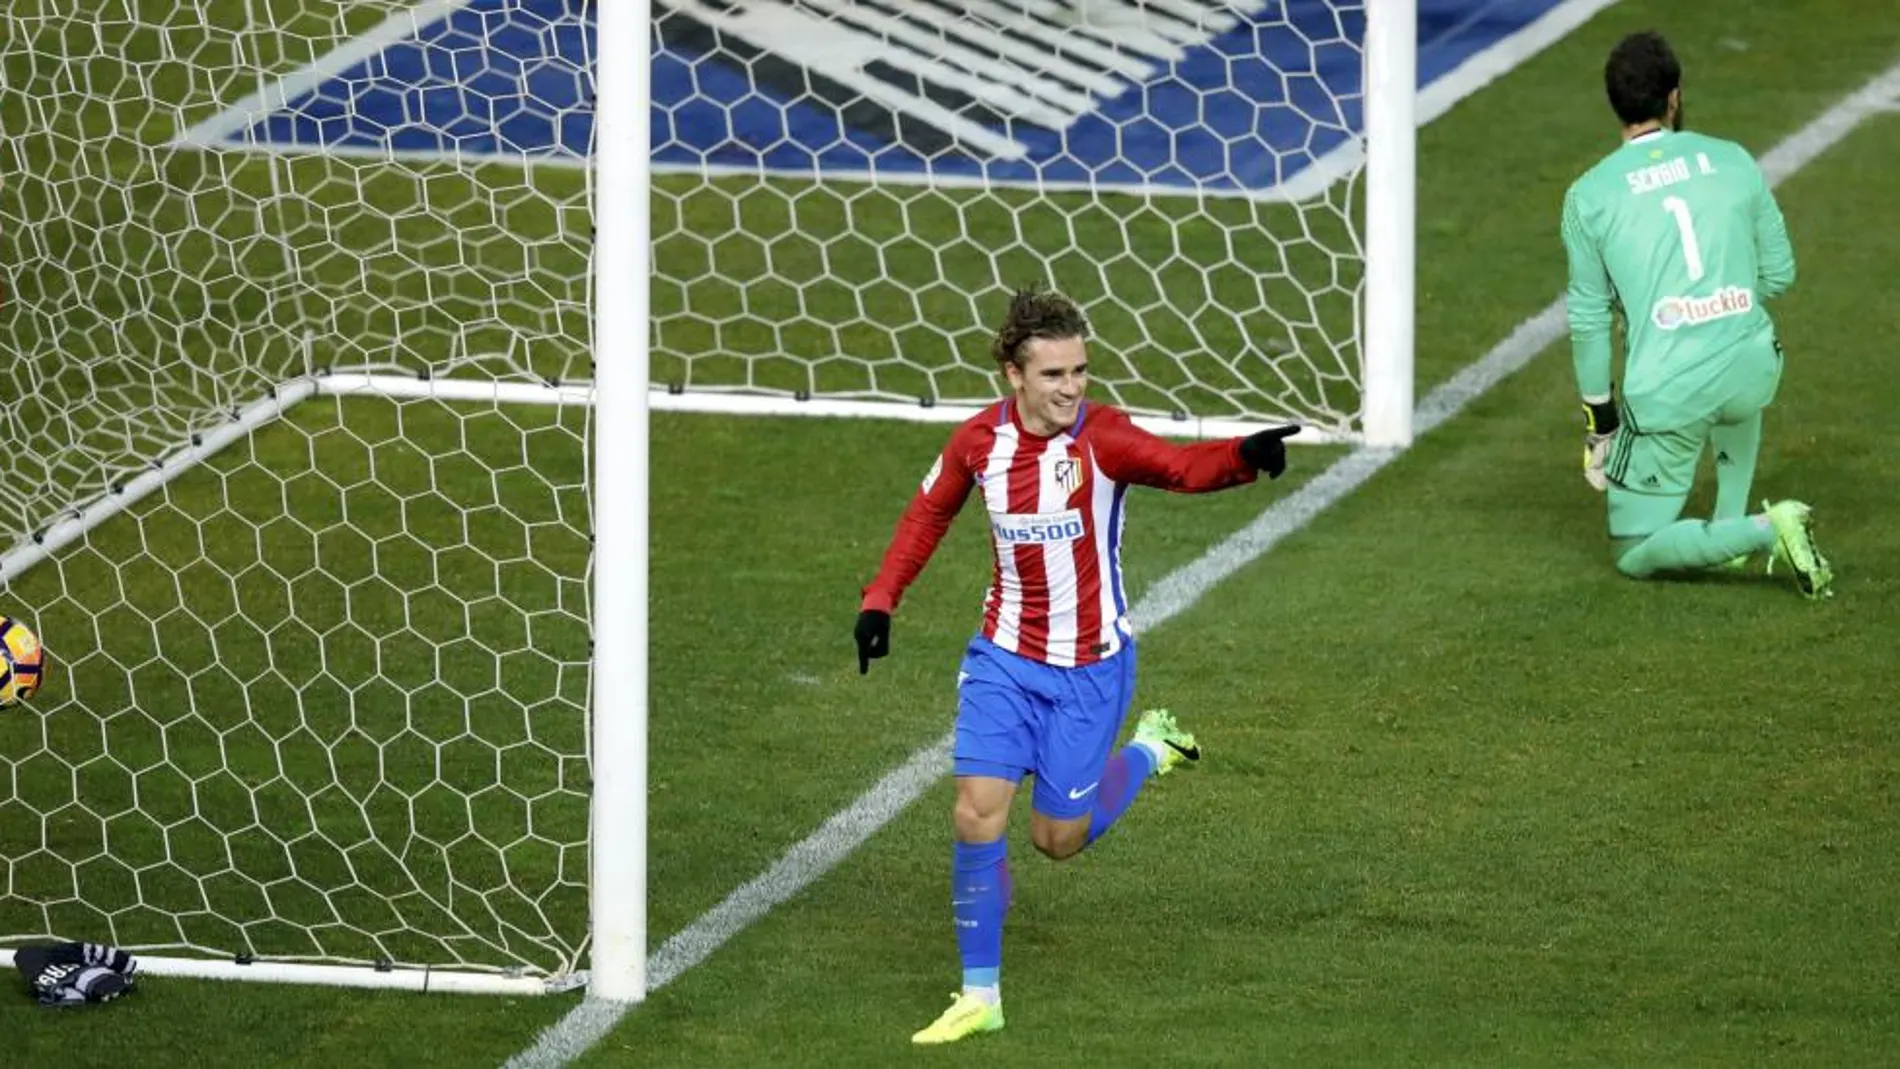 El delantero del Atlético de Madrid Griezmann celebra tras marcar el tercer gol ante el Celta